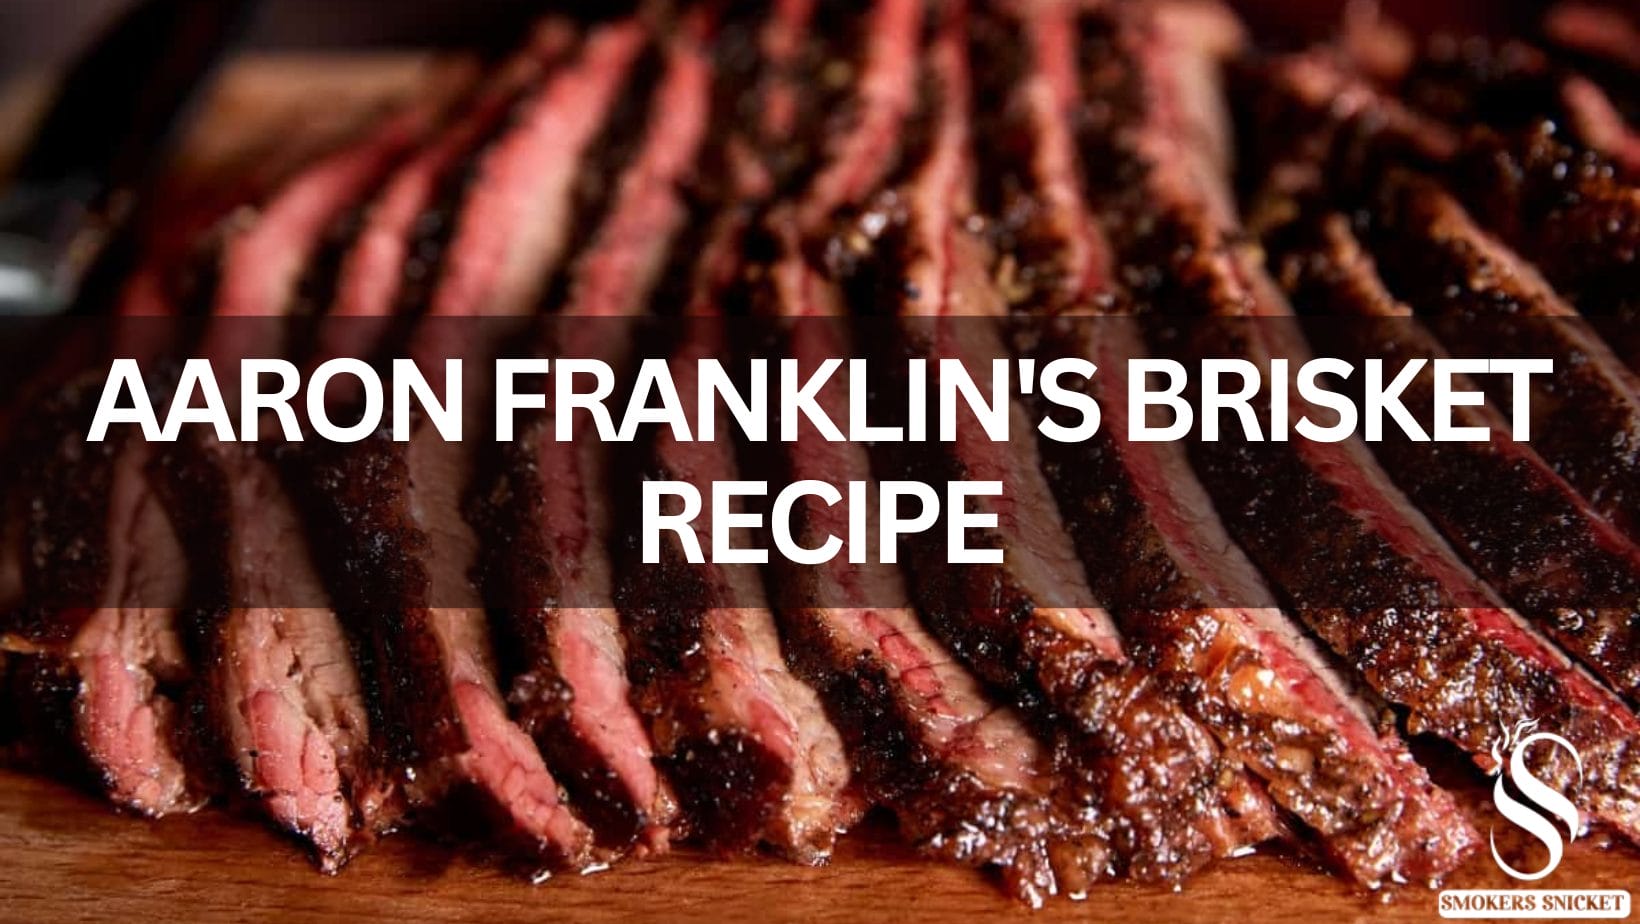 Aaron Franklin's Brisket Recipe